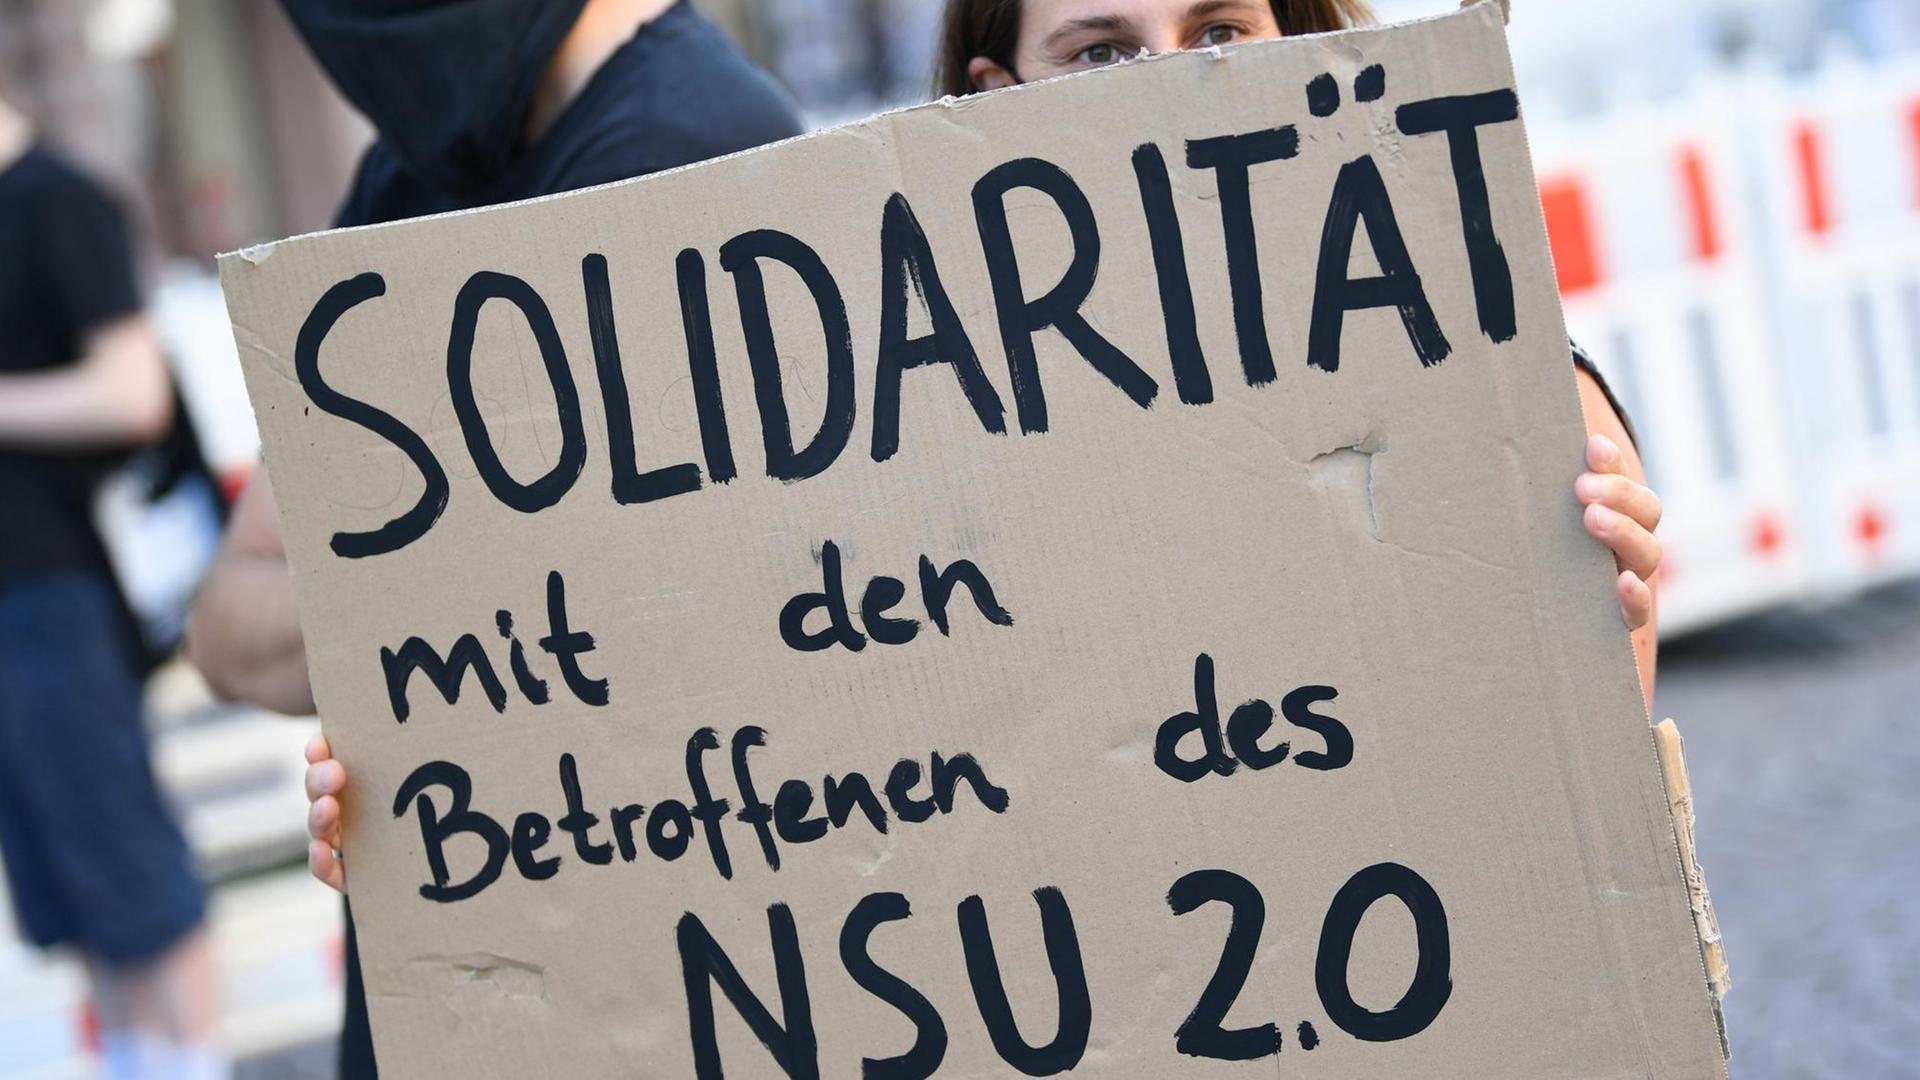 Ein Demonstrantin während einer Kundgebung in der Wiesbadener Innenstadt mit einem Plakat mit der Aufschrift "Solidarität mit den Betroffenen des NSU 2.0". Anlass der Protestaktion war eine Sitzung des Landtags-Innenausschusses zu der Affäre um rechtsextreme Drohschreiben.